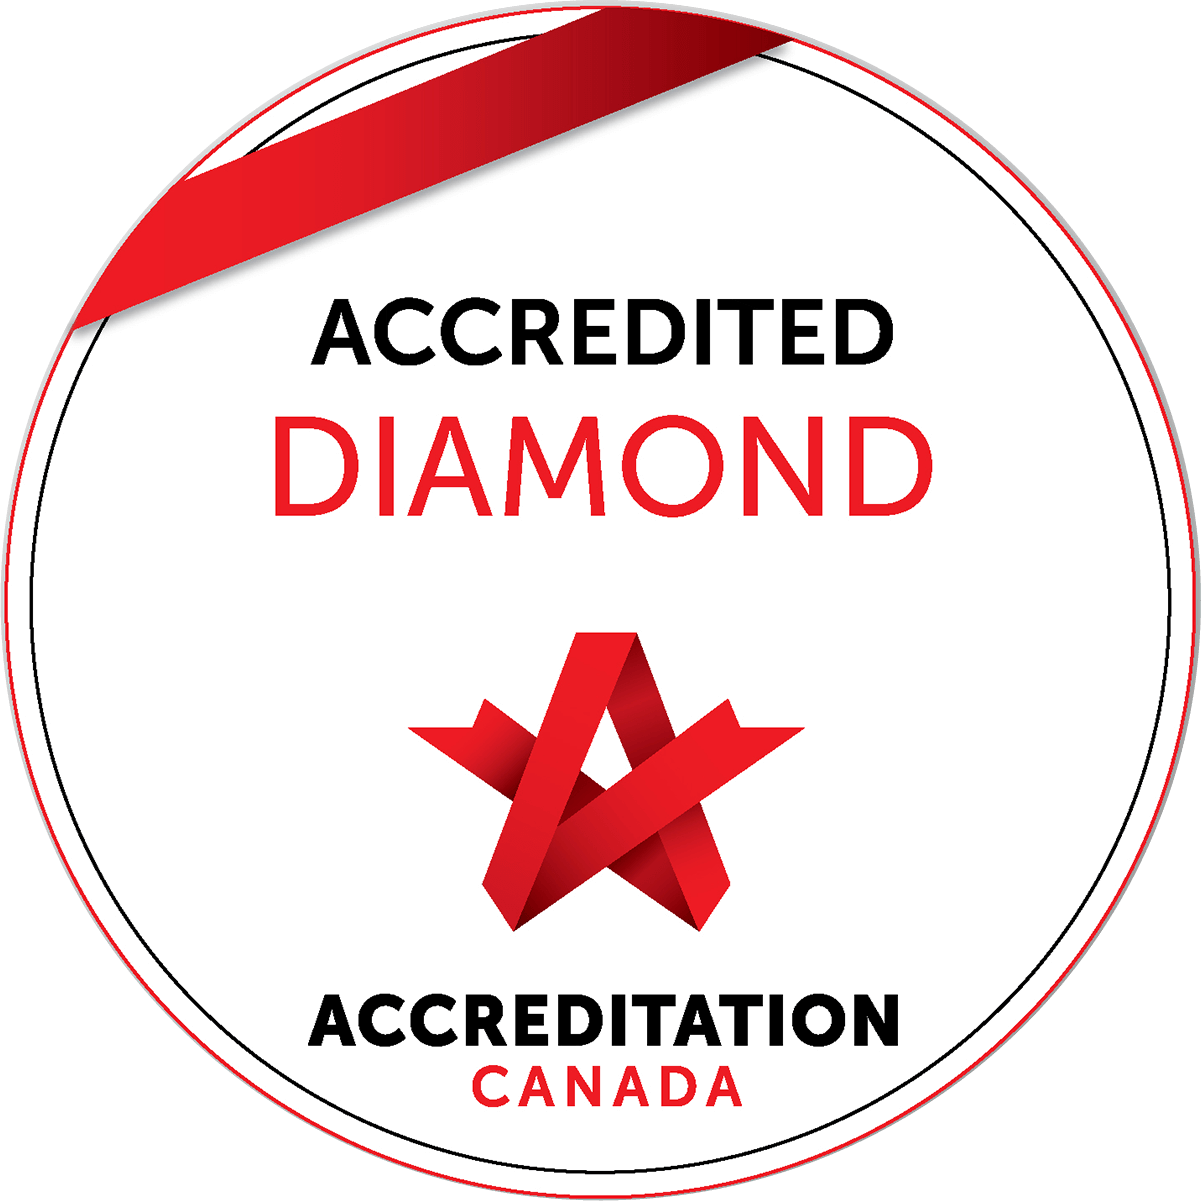 Accredited Diamond Canada